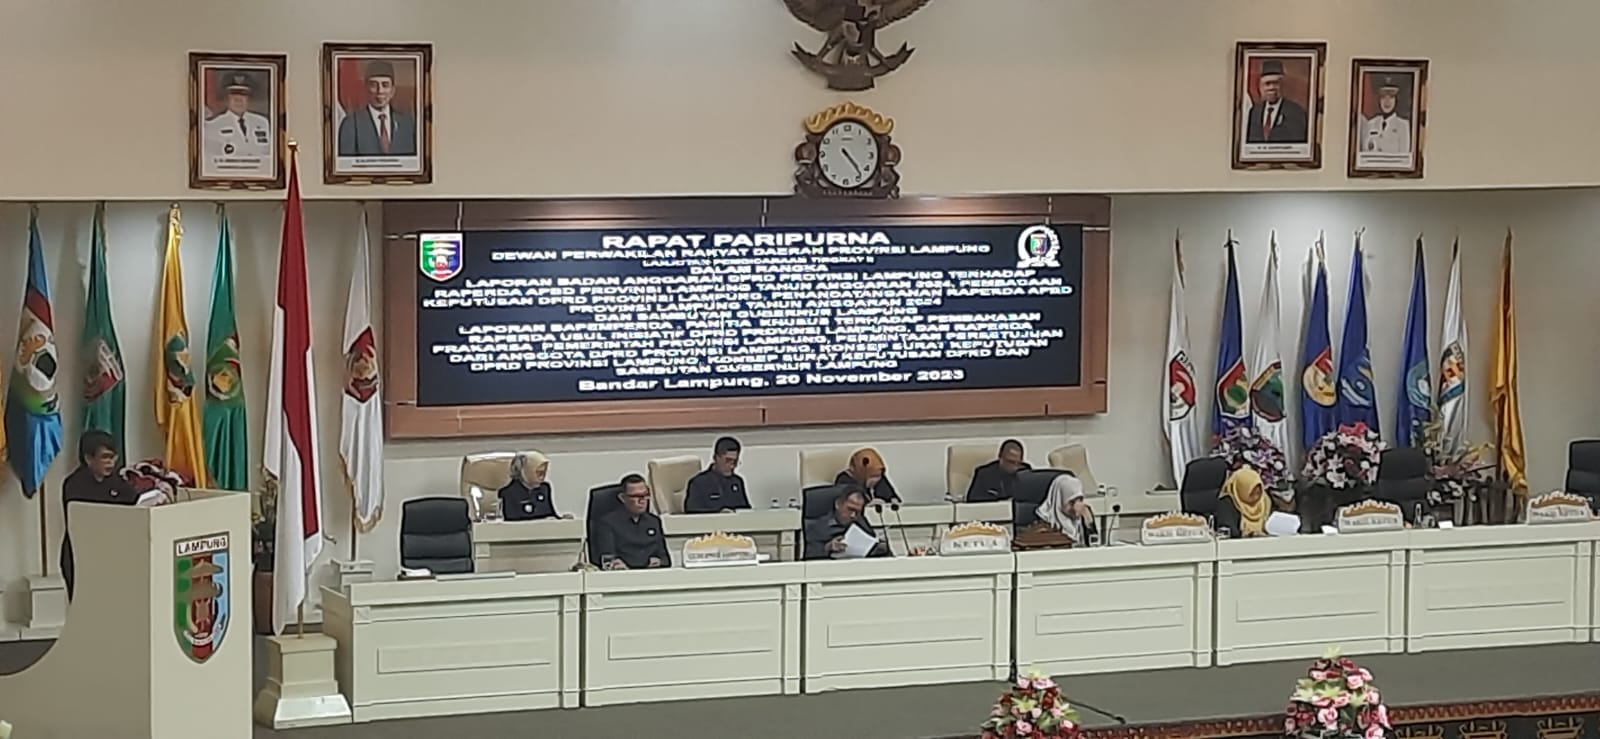 APBD Lampung Disahkan, Belanja Daerah Dipatok Rp 8,333 Triliun 